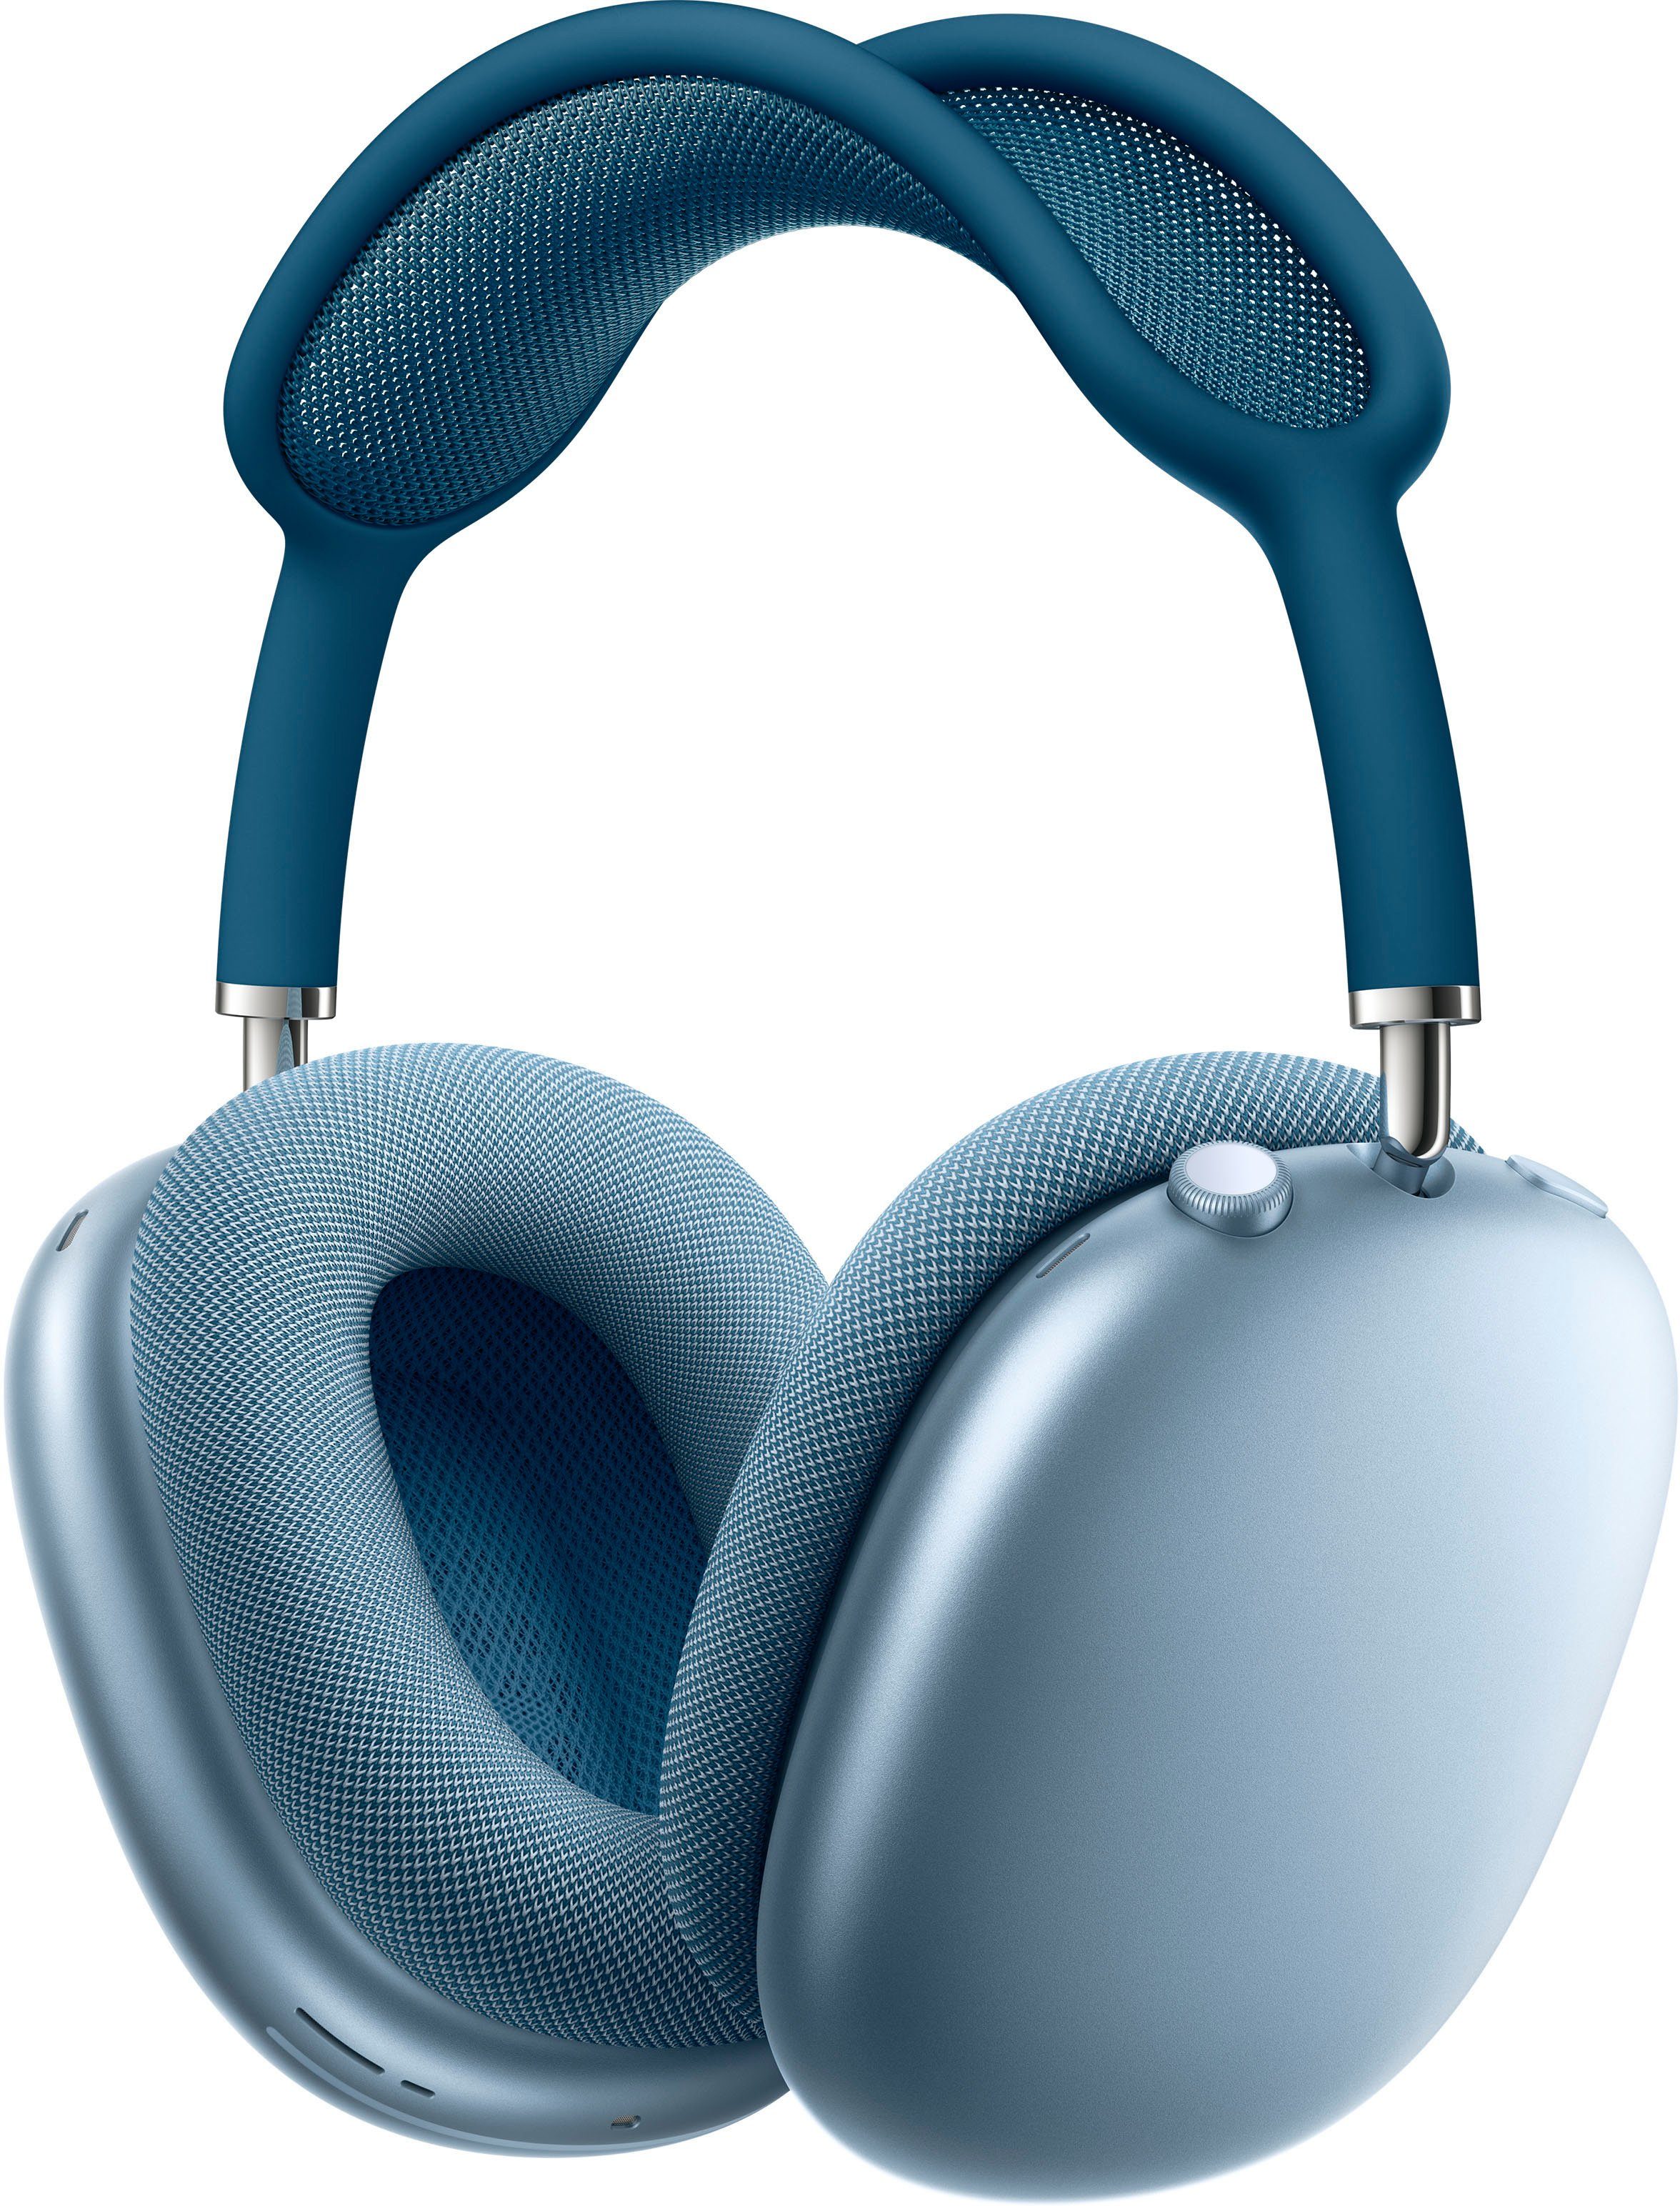 Apple AirPods Max Over-Ear-Kopfhörer (Active Noise Cancelling (ANC), Rauschunterdrückung, Sprachsteuerung, Transparenzmodus, integrierte Steuerung für Anrufe und Musik, kompatibel mit Siri, Siri, Bluetooth) blau | Over-Ear-Kopfhörer